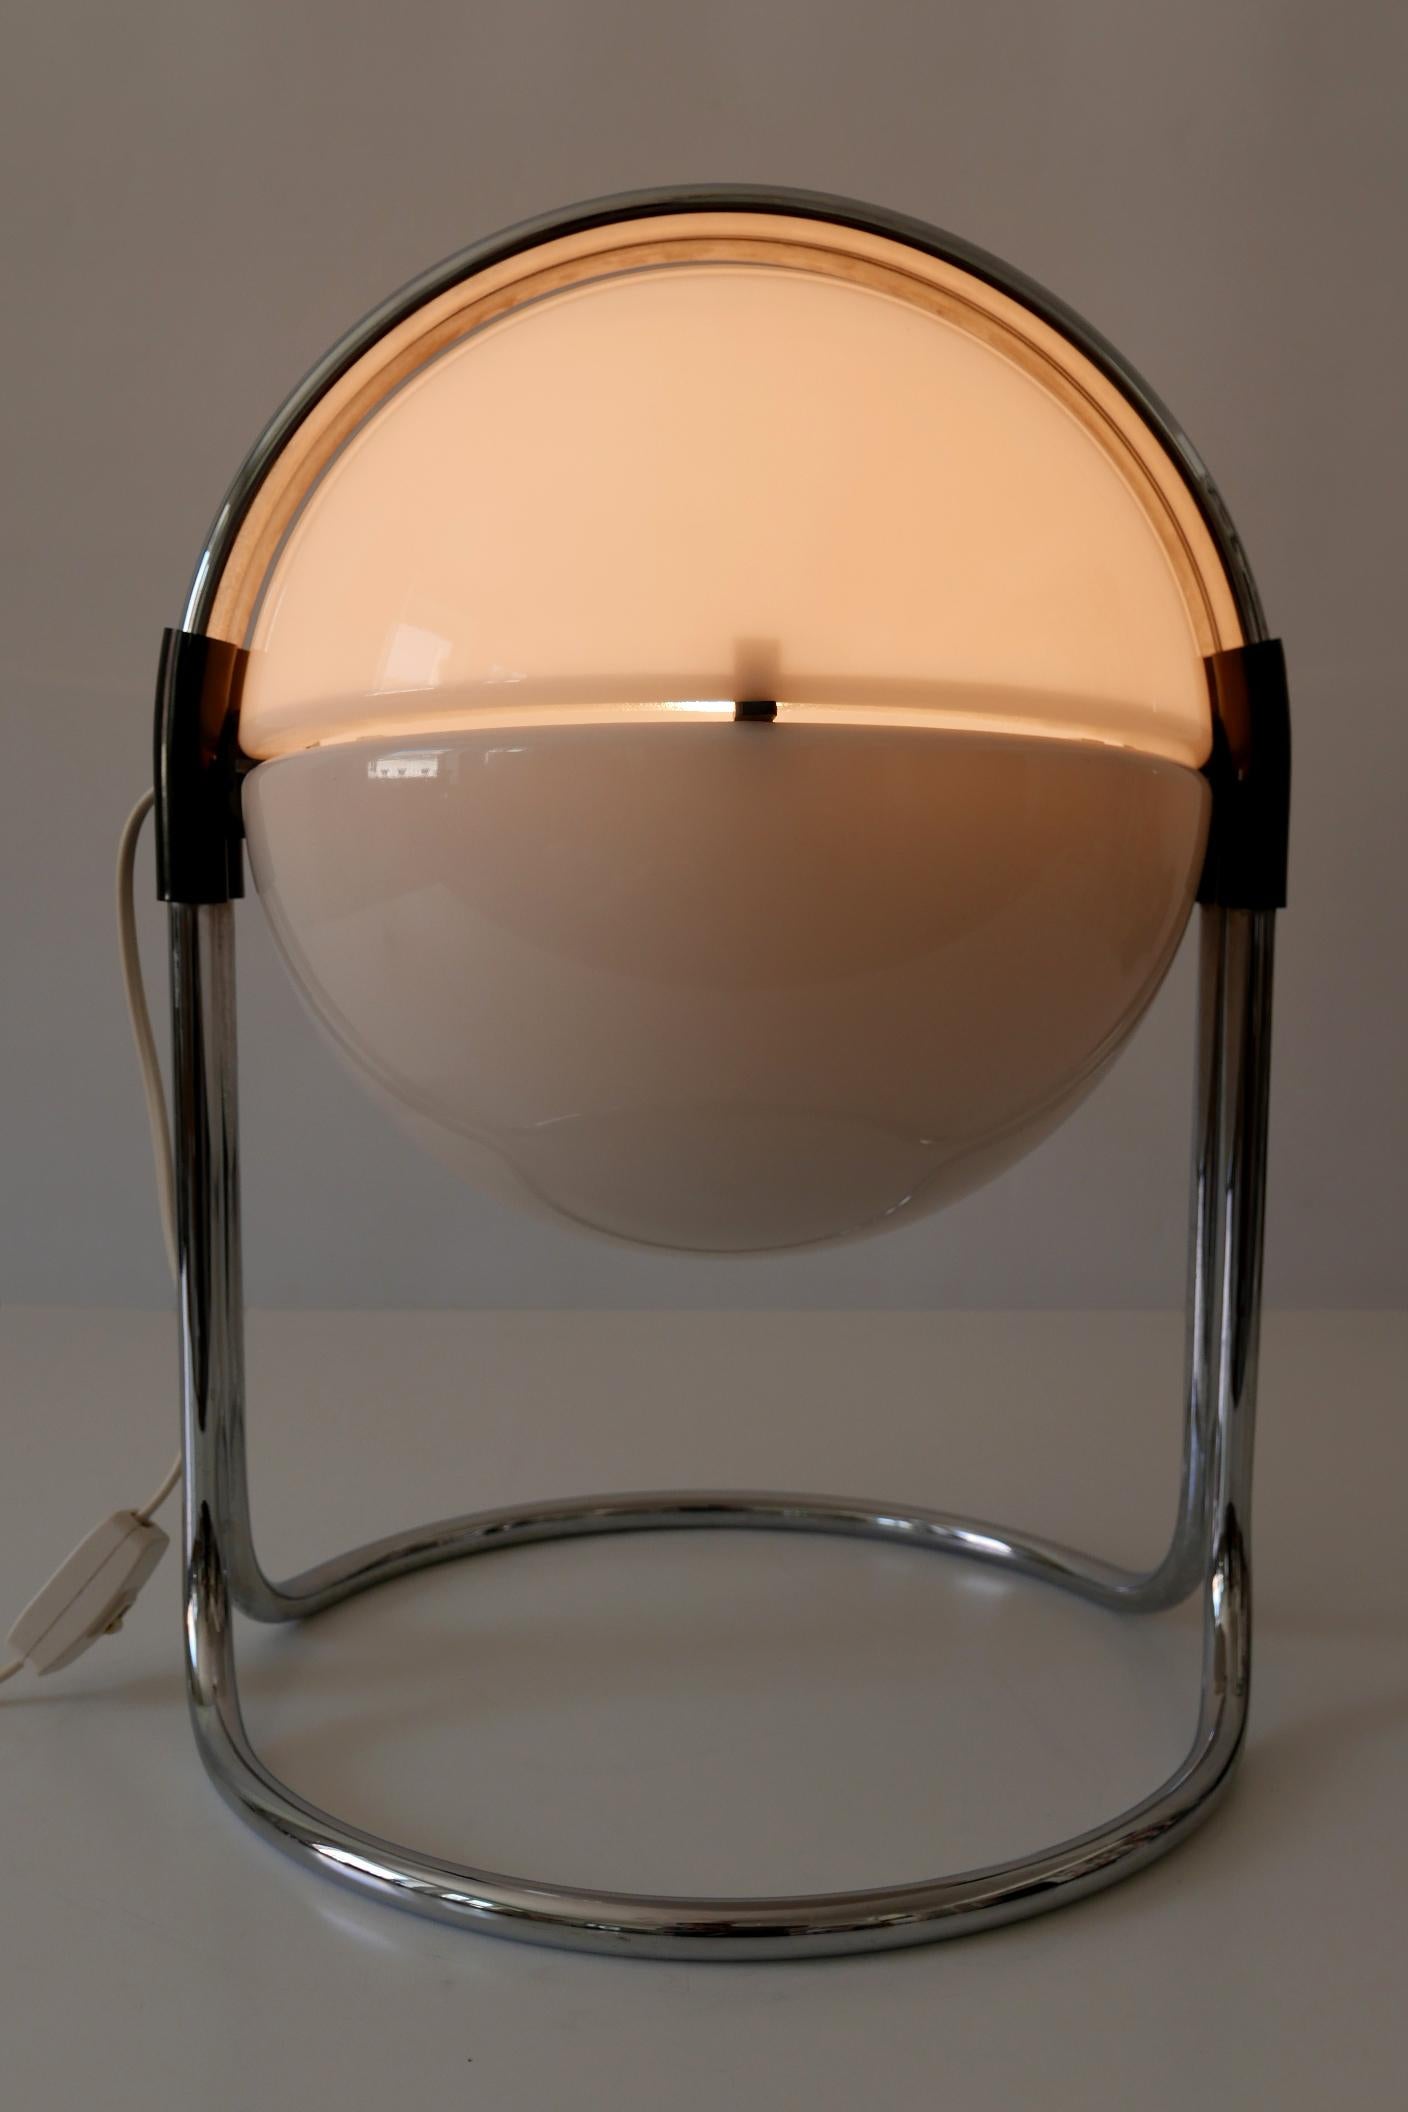 Lampe de table extrêmement rare et de grande taille avec un abat-jour rotatif en plexiglas. Conçu par André Ricard en 1967 pour Metalarte, Espagne. Les bras portent la marque du fabricant. 

L'abat-jour se compose de deux parties. L'une des parties